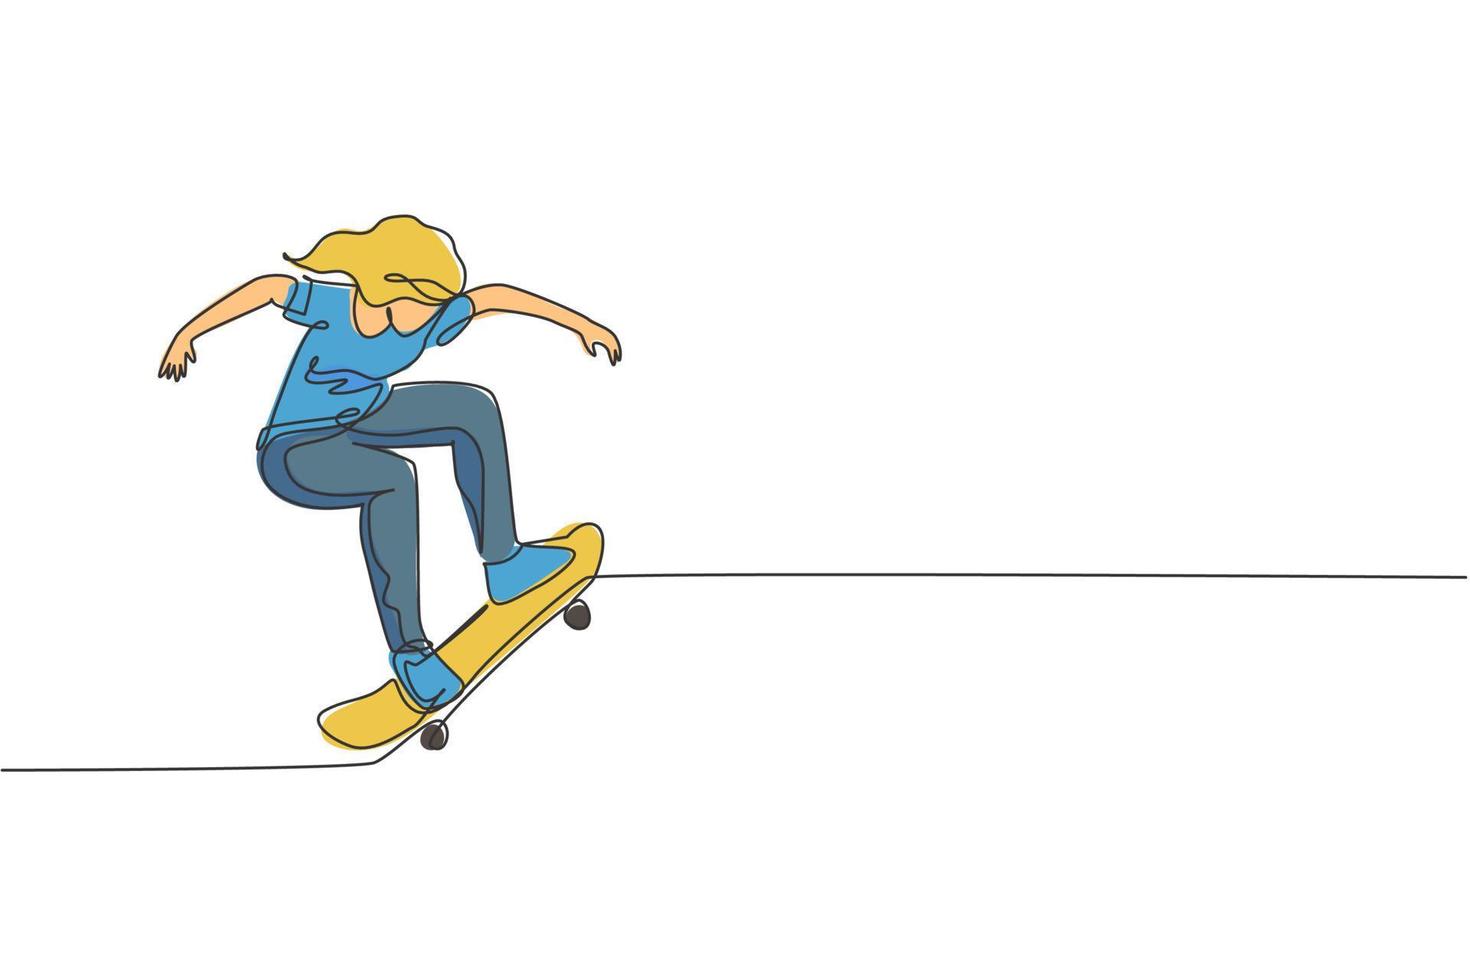 een doorlopende lijntekening van een jonge coole skateboarder-vrouw die op een skateboard rijdt en een truc doet in het skatepark. extreme tiener sport concept. dynamische enkele lijn tekenen grafisch ontwerp vectorillustratie vector